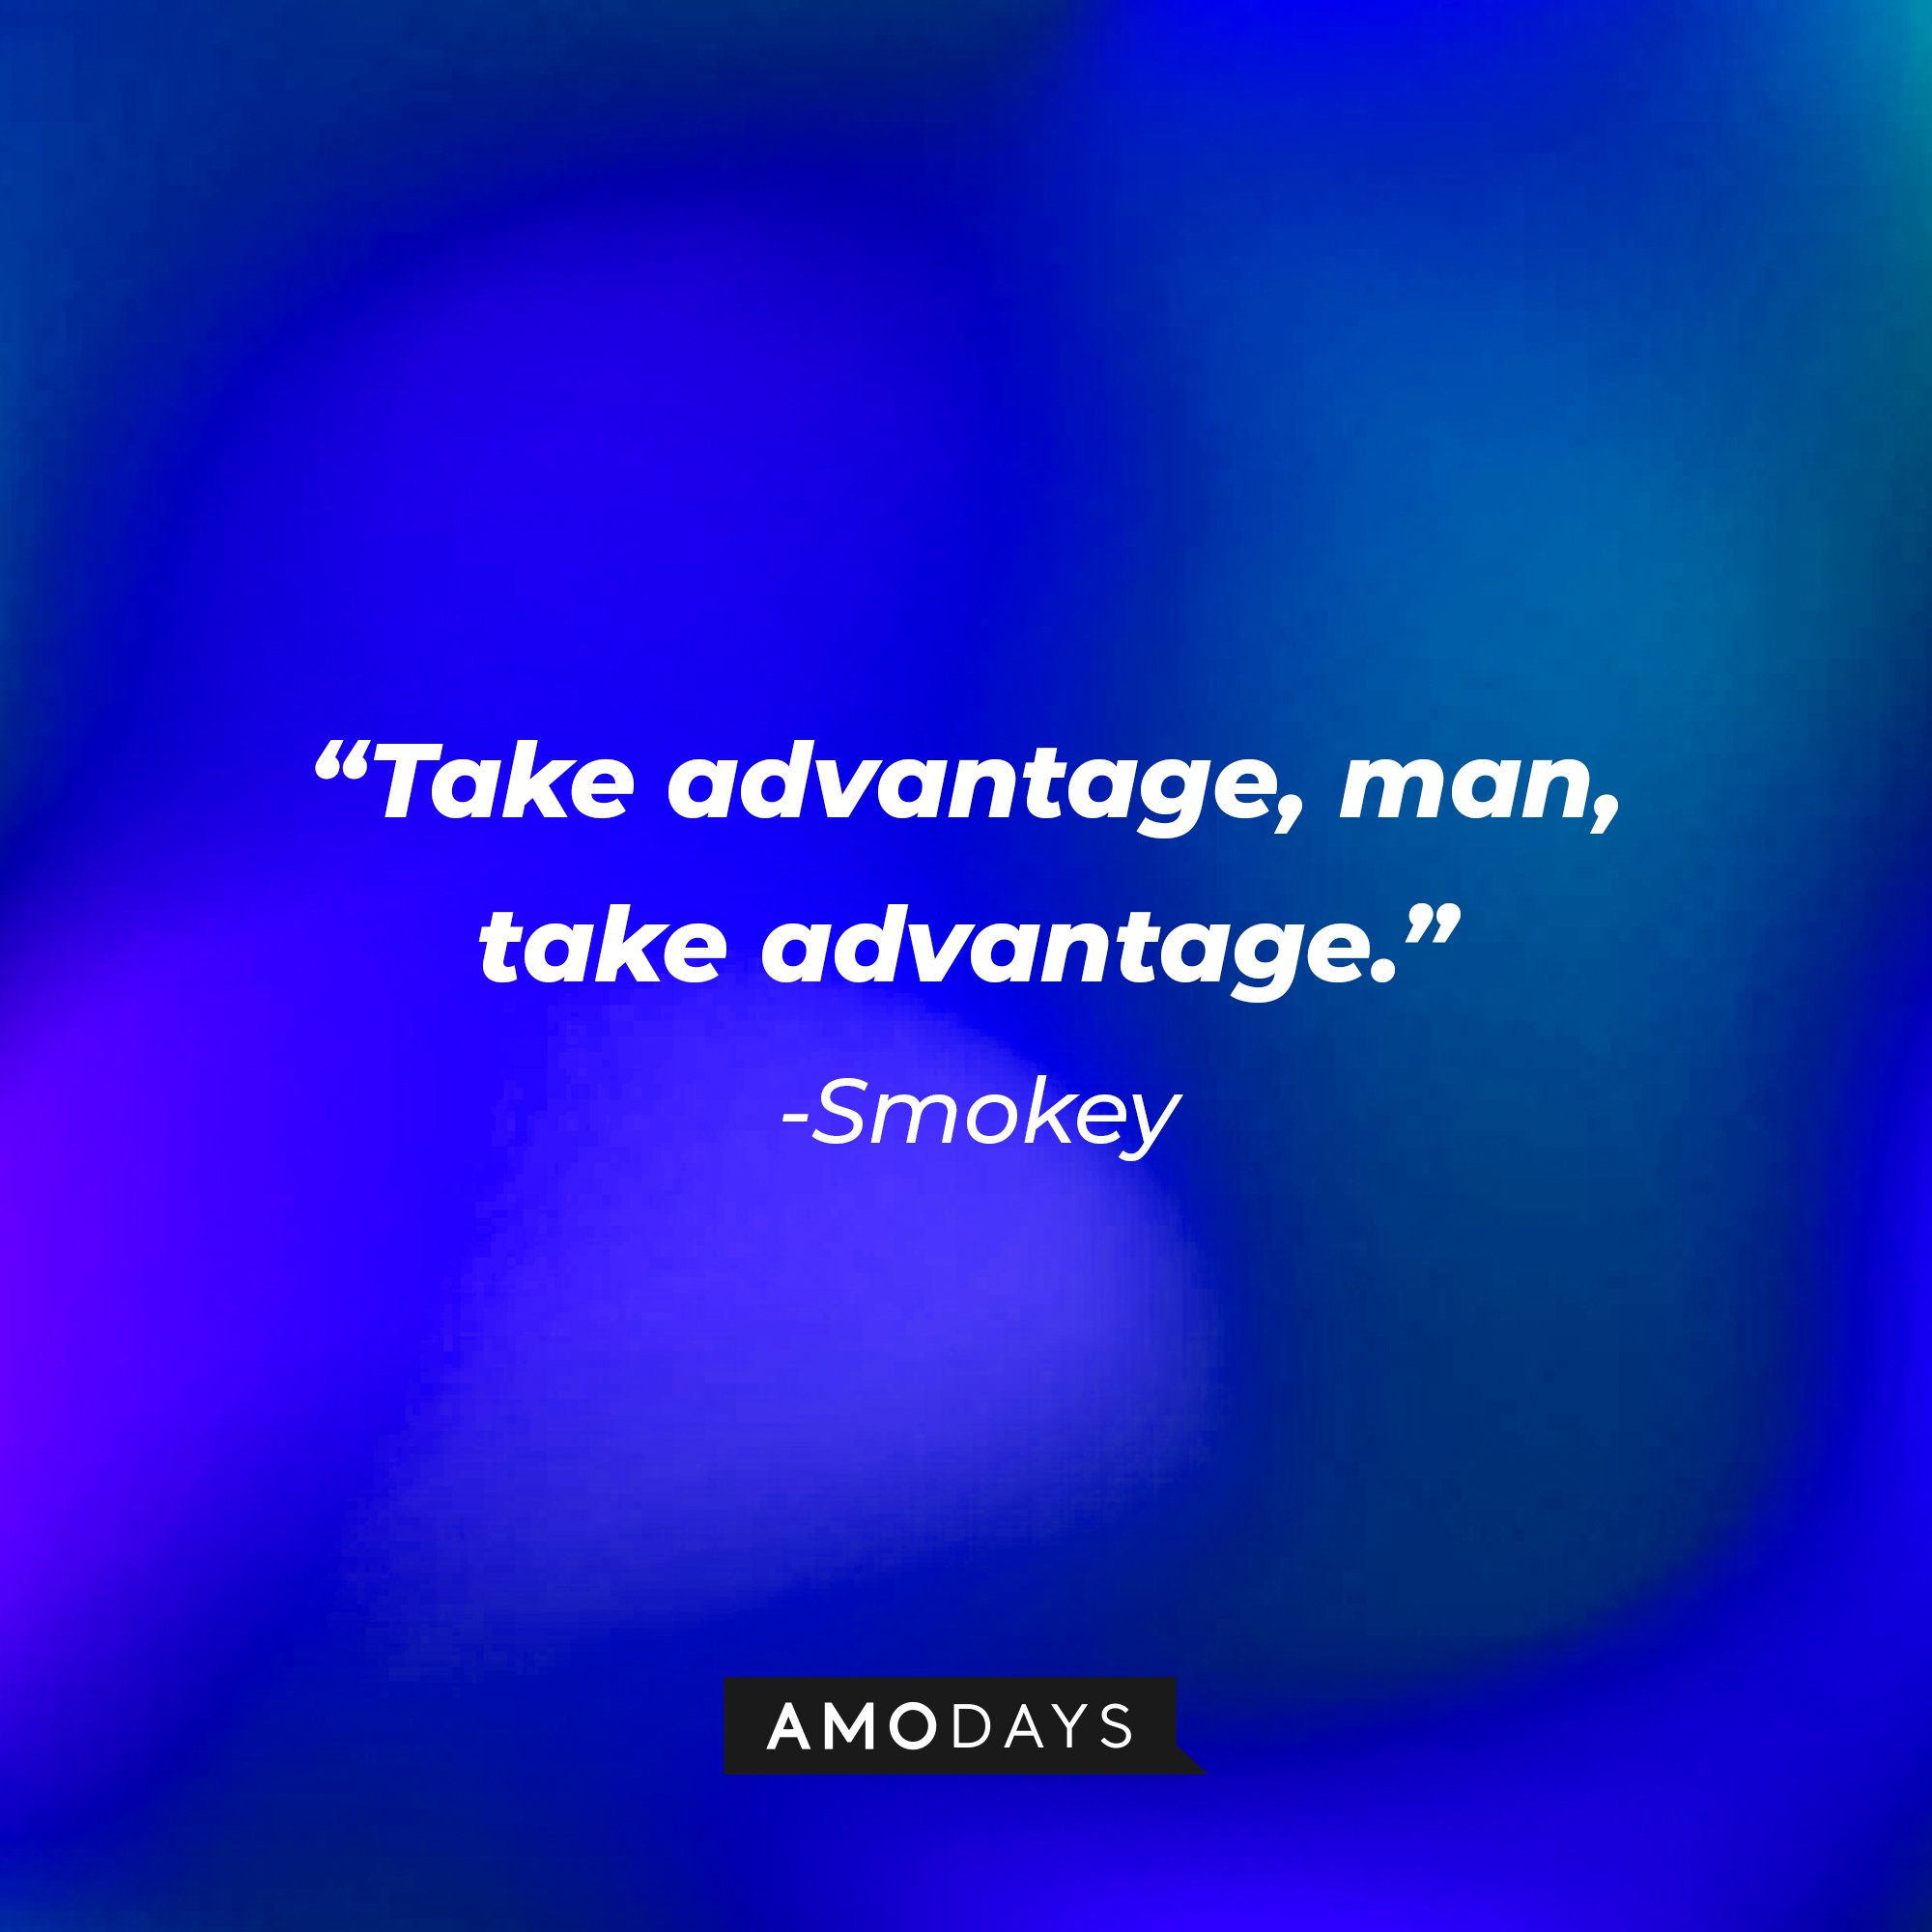 Smokeys’ quote: "Take advantage, man, take advantage." | Image: AmoDays